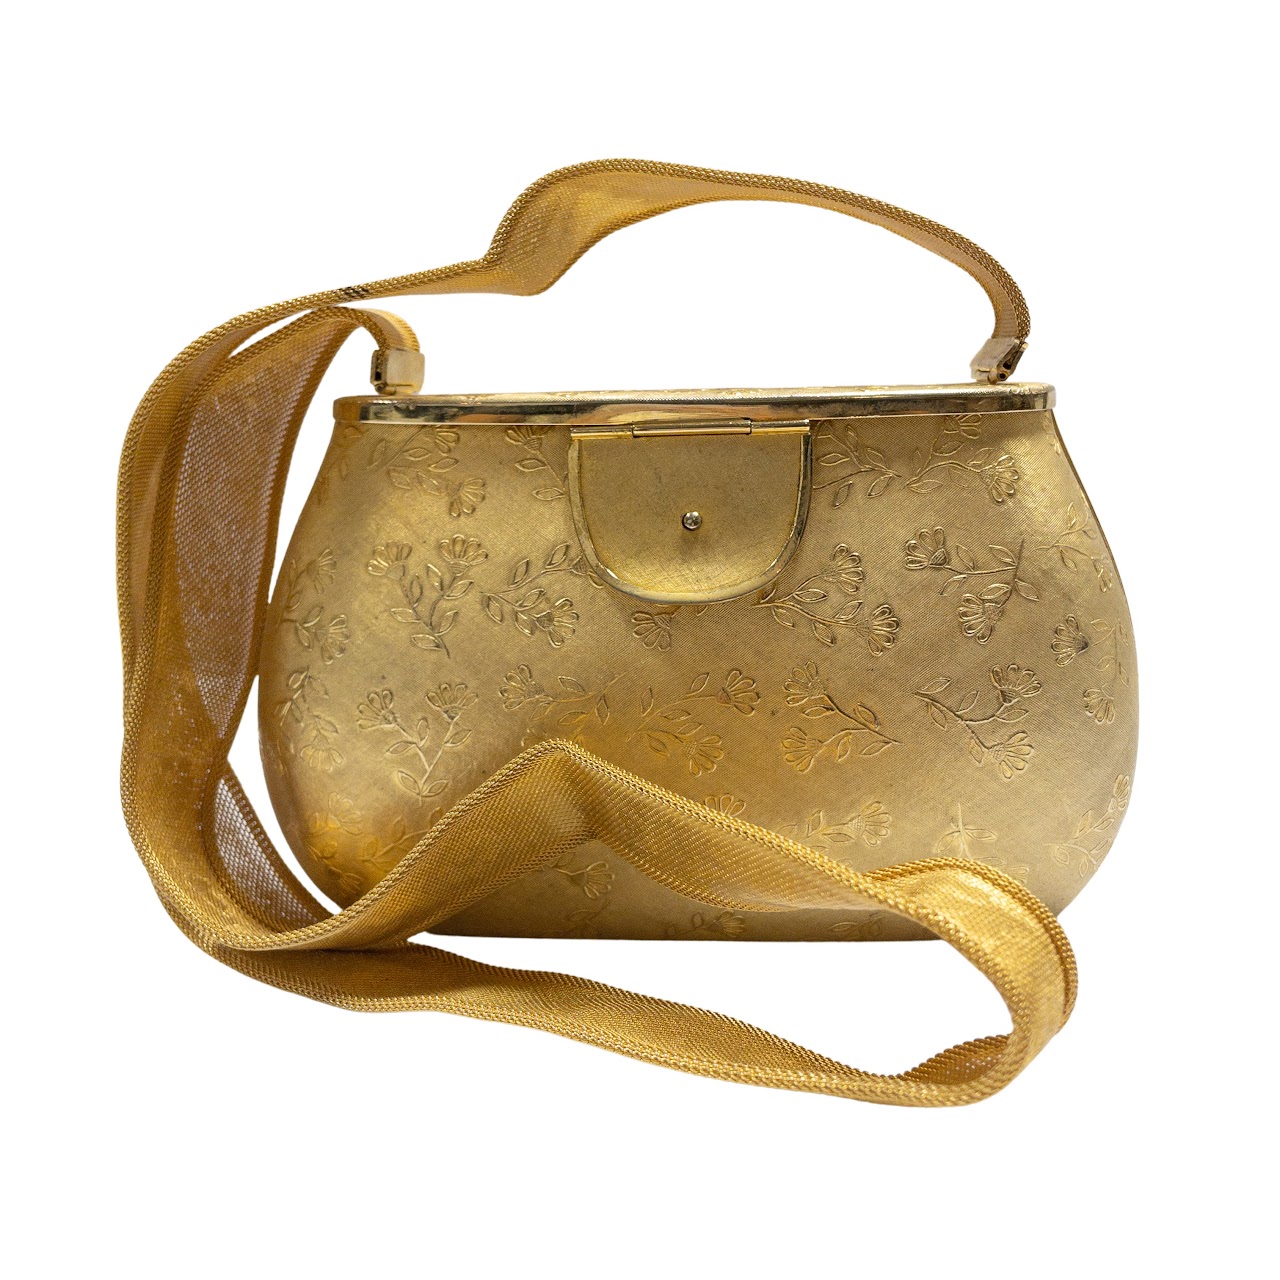 Vintage Rosenfeld Made in Italy Gold Metal Hard Case Handbag Shoulder Bag